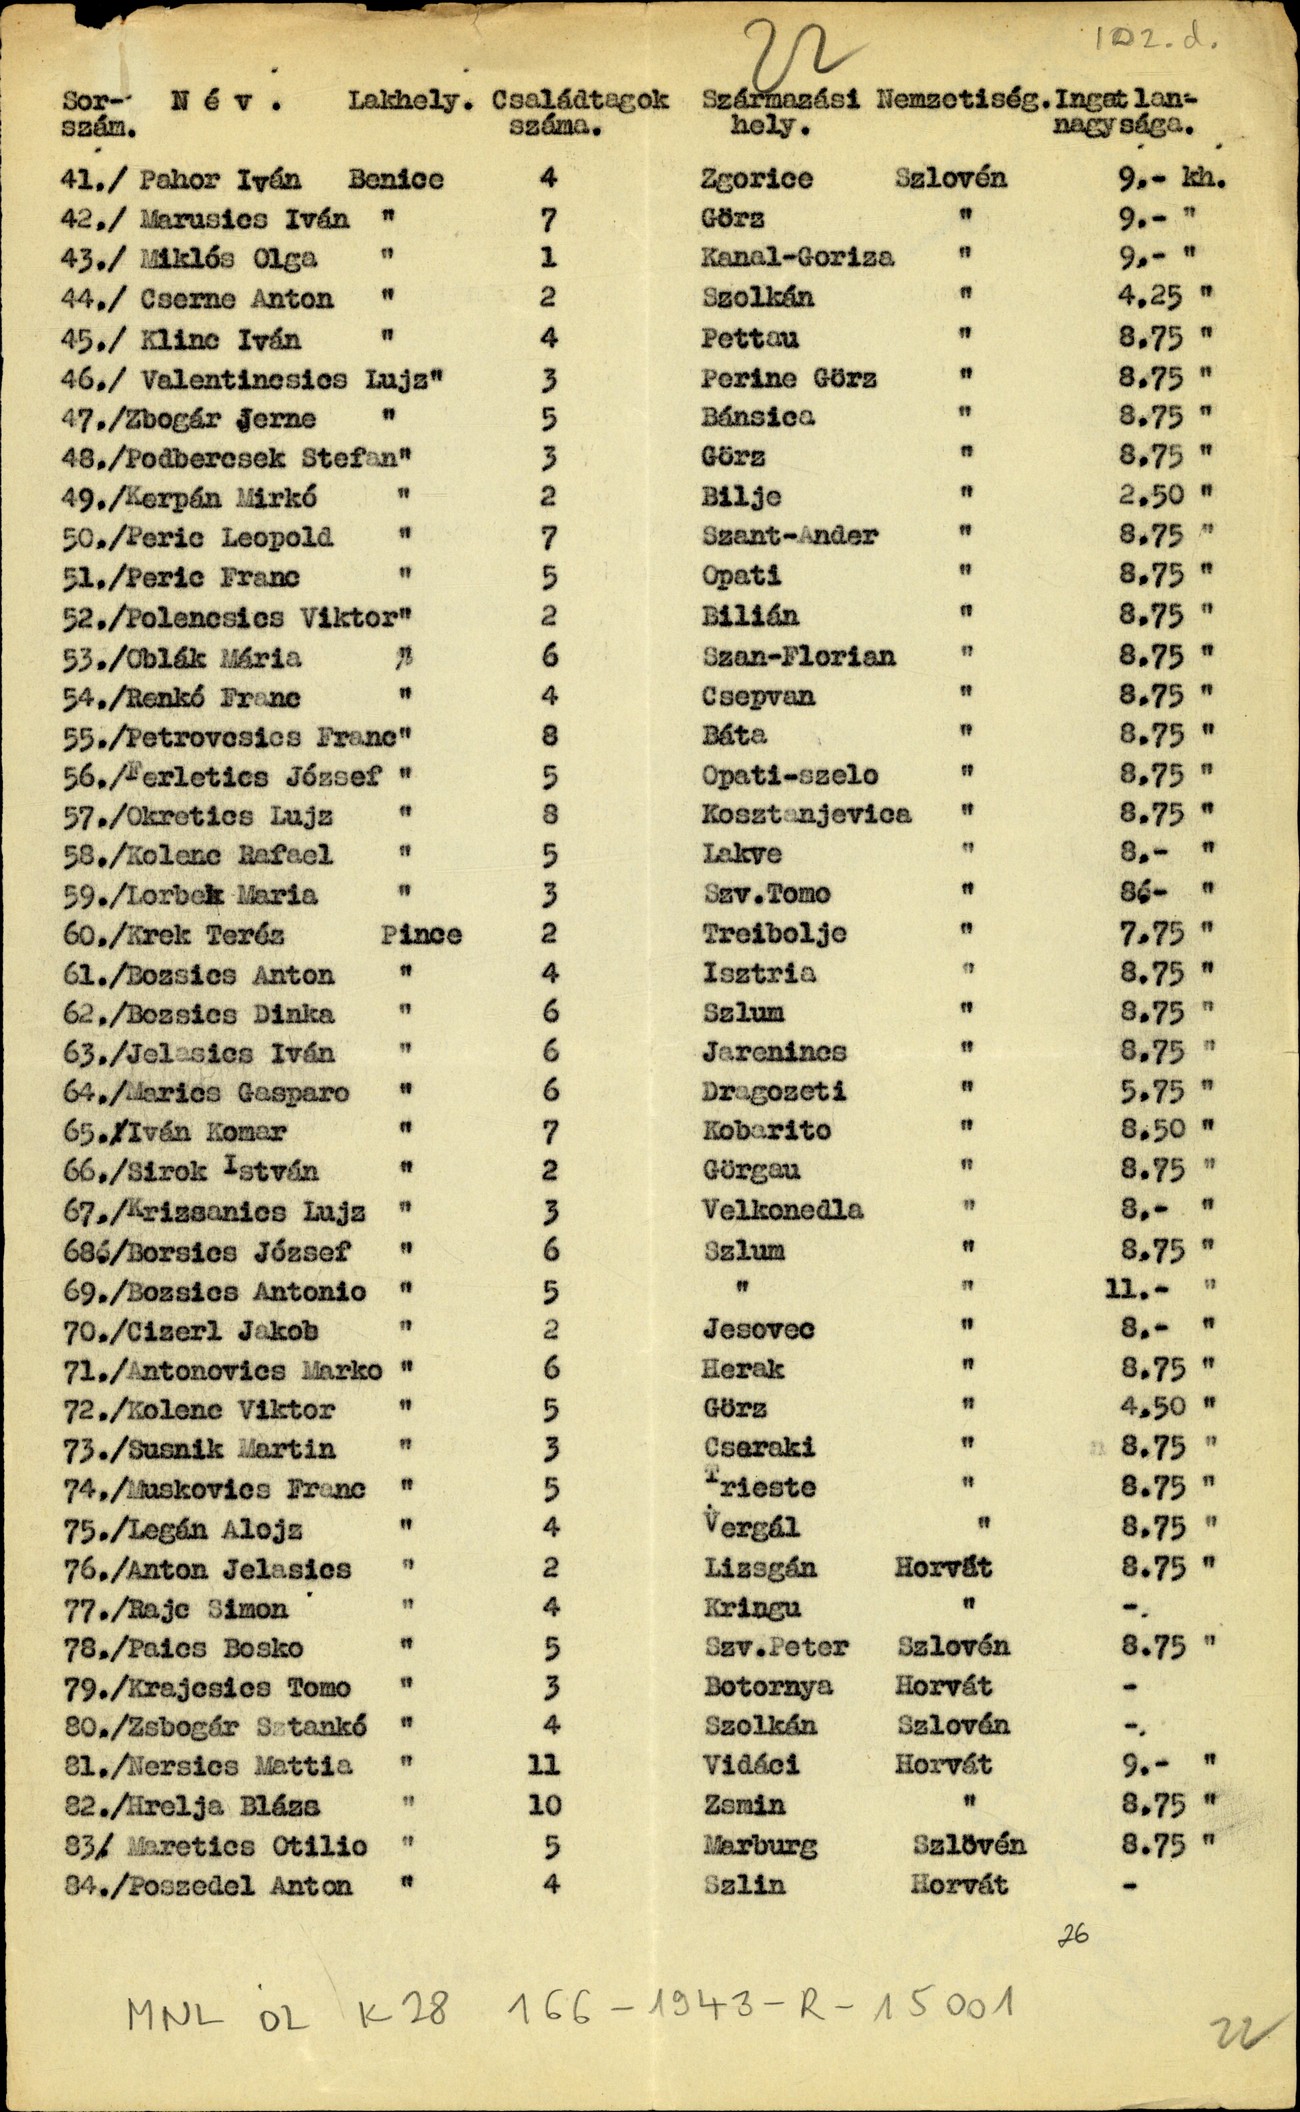 Druga stran seznama kolonistov, ki so ga madžarske oblasti pripravile januarja 1942. MNL OL, K-28, 101 csomó, 166. tétel, 22.